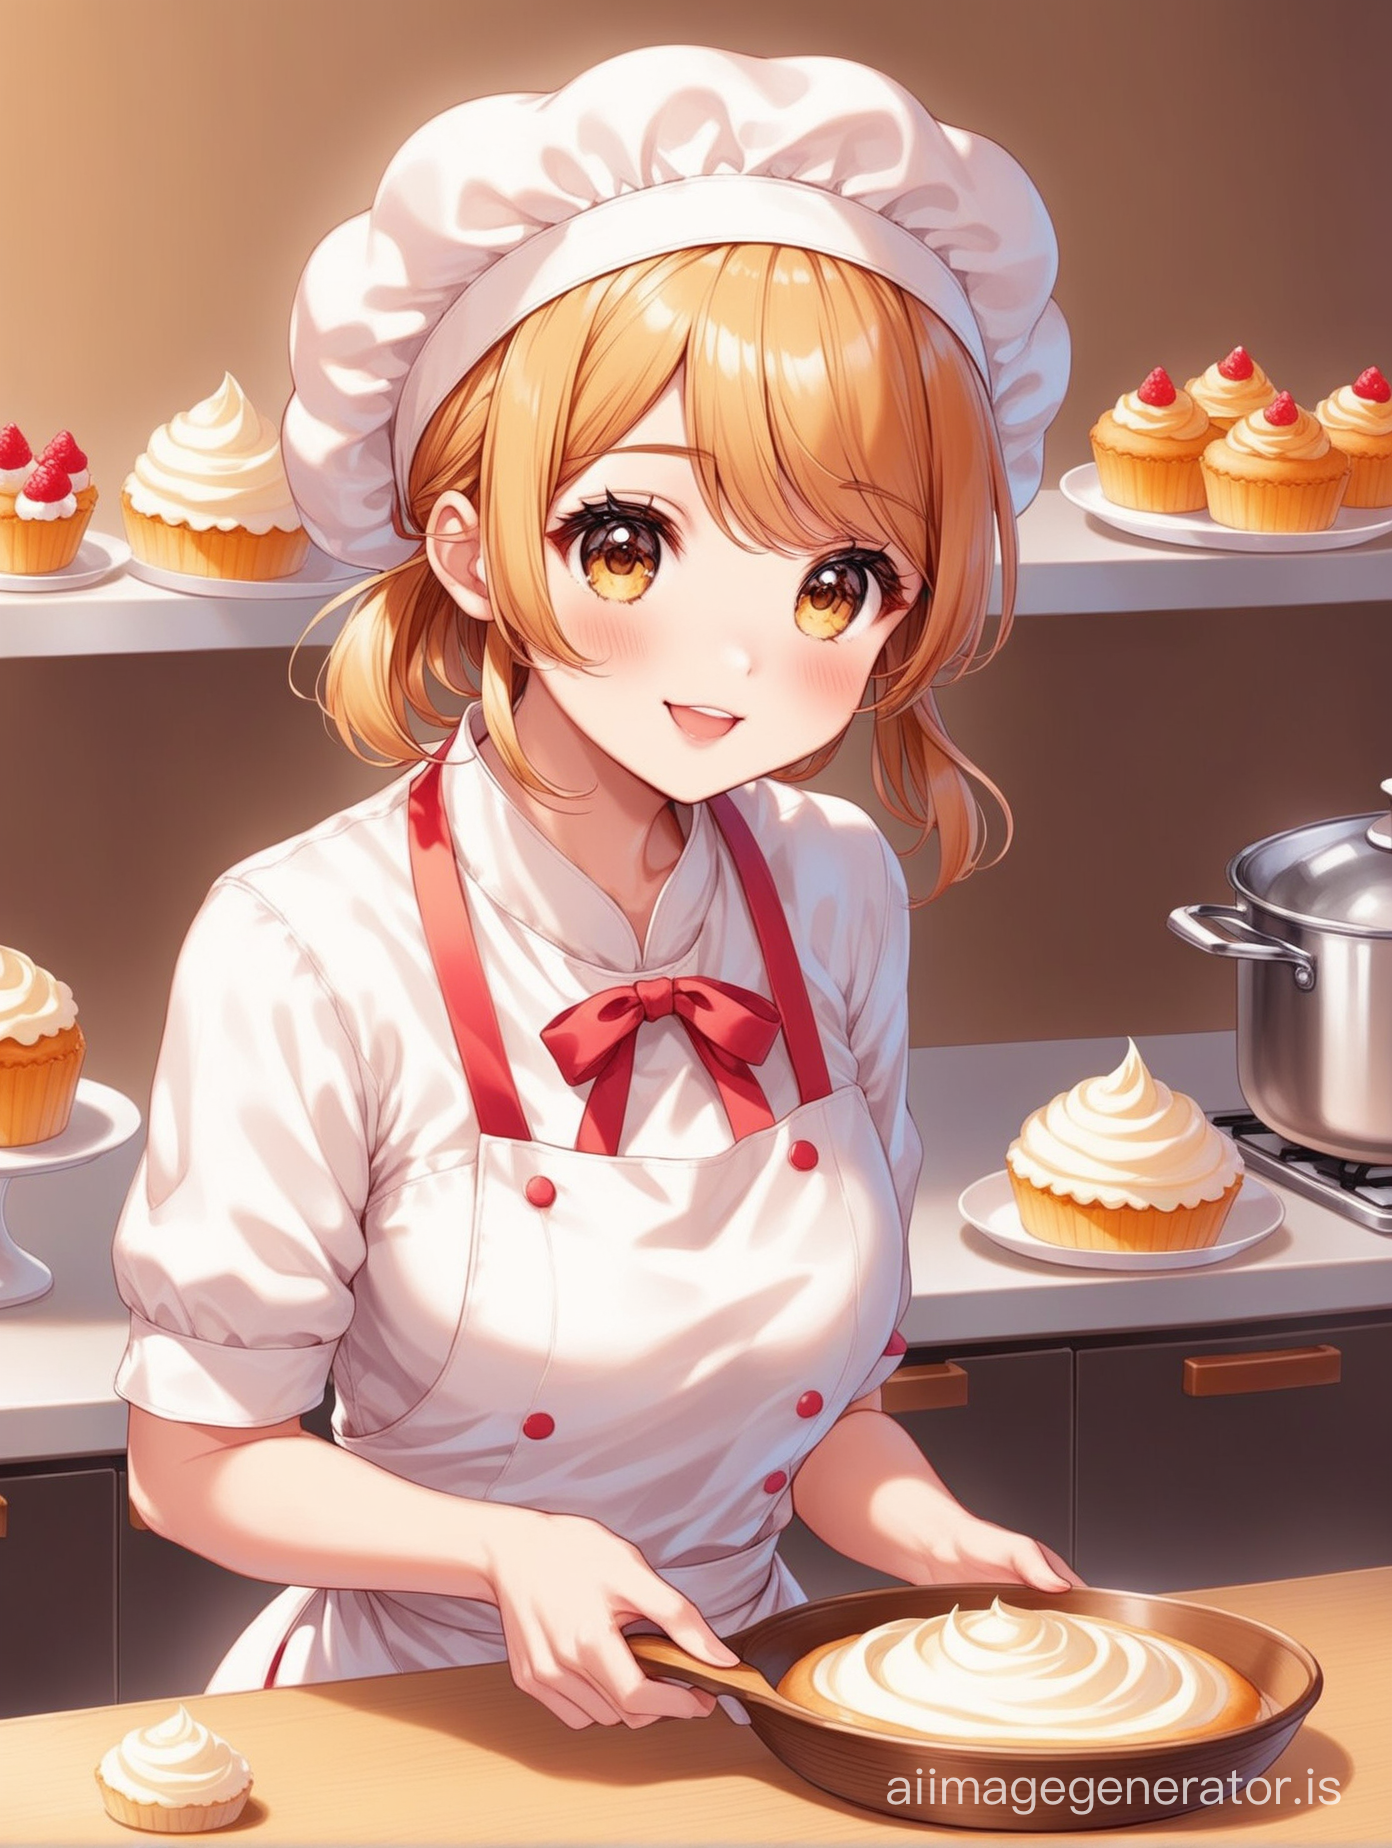 Cute baker